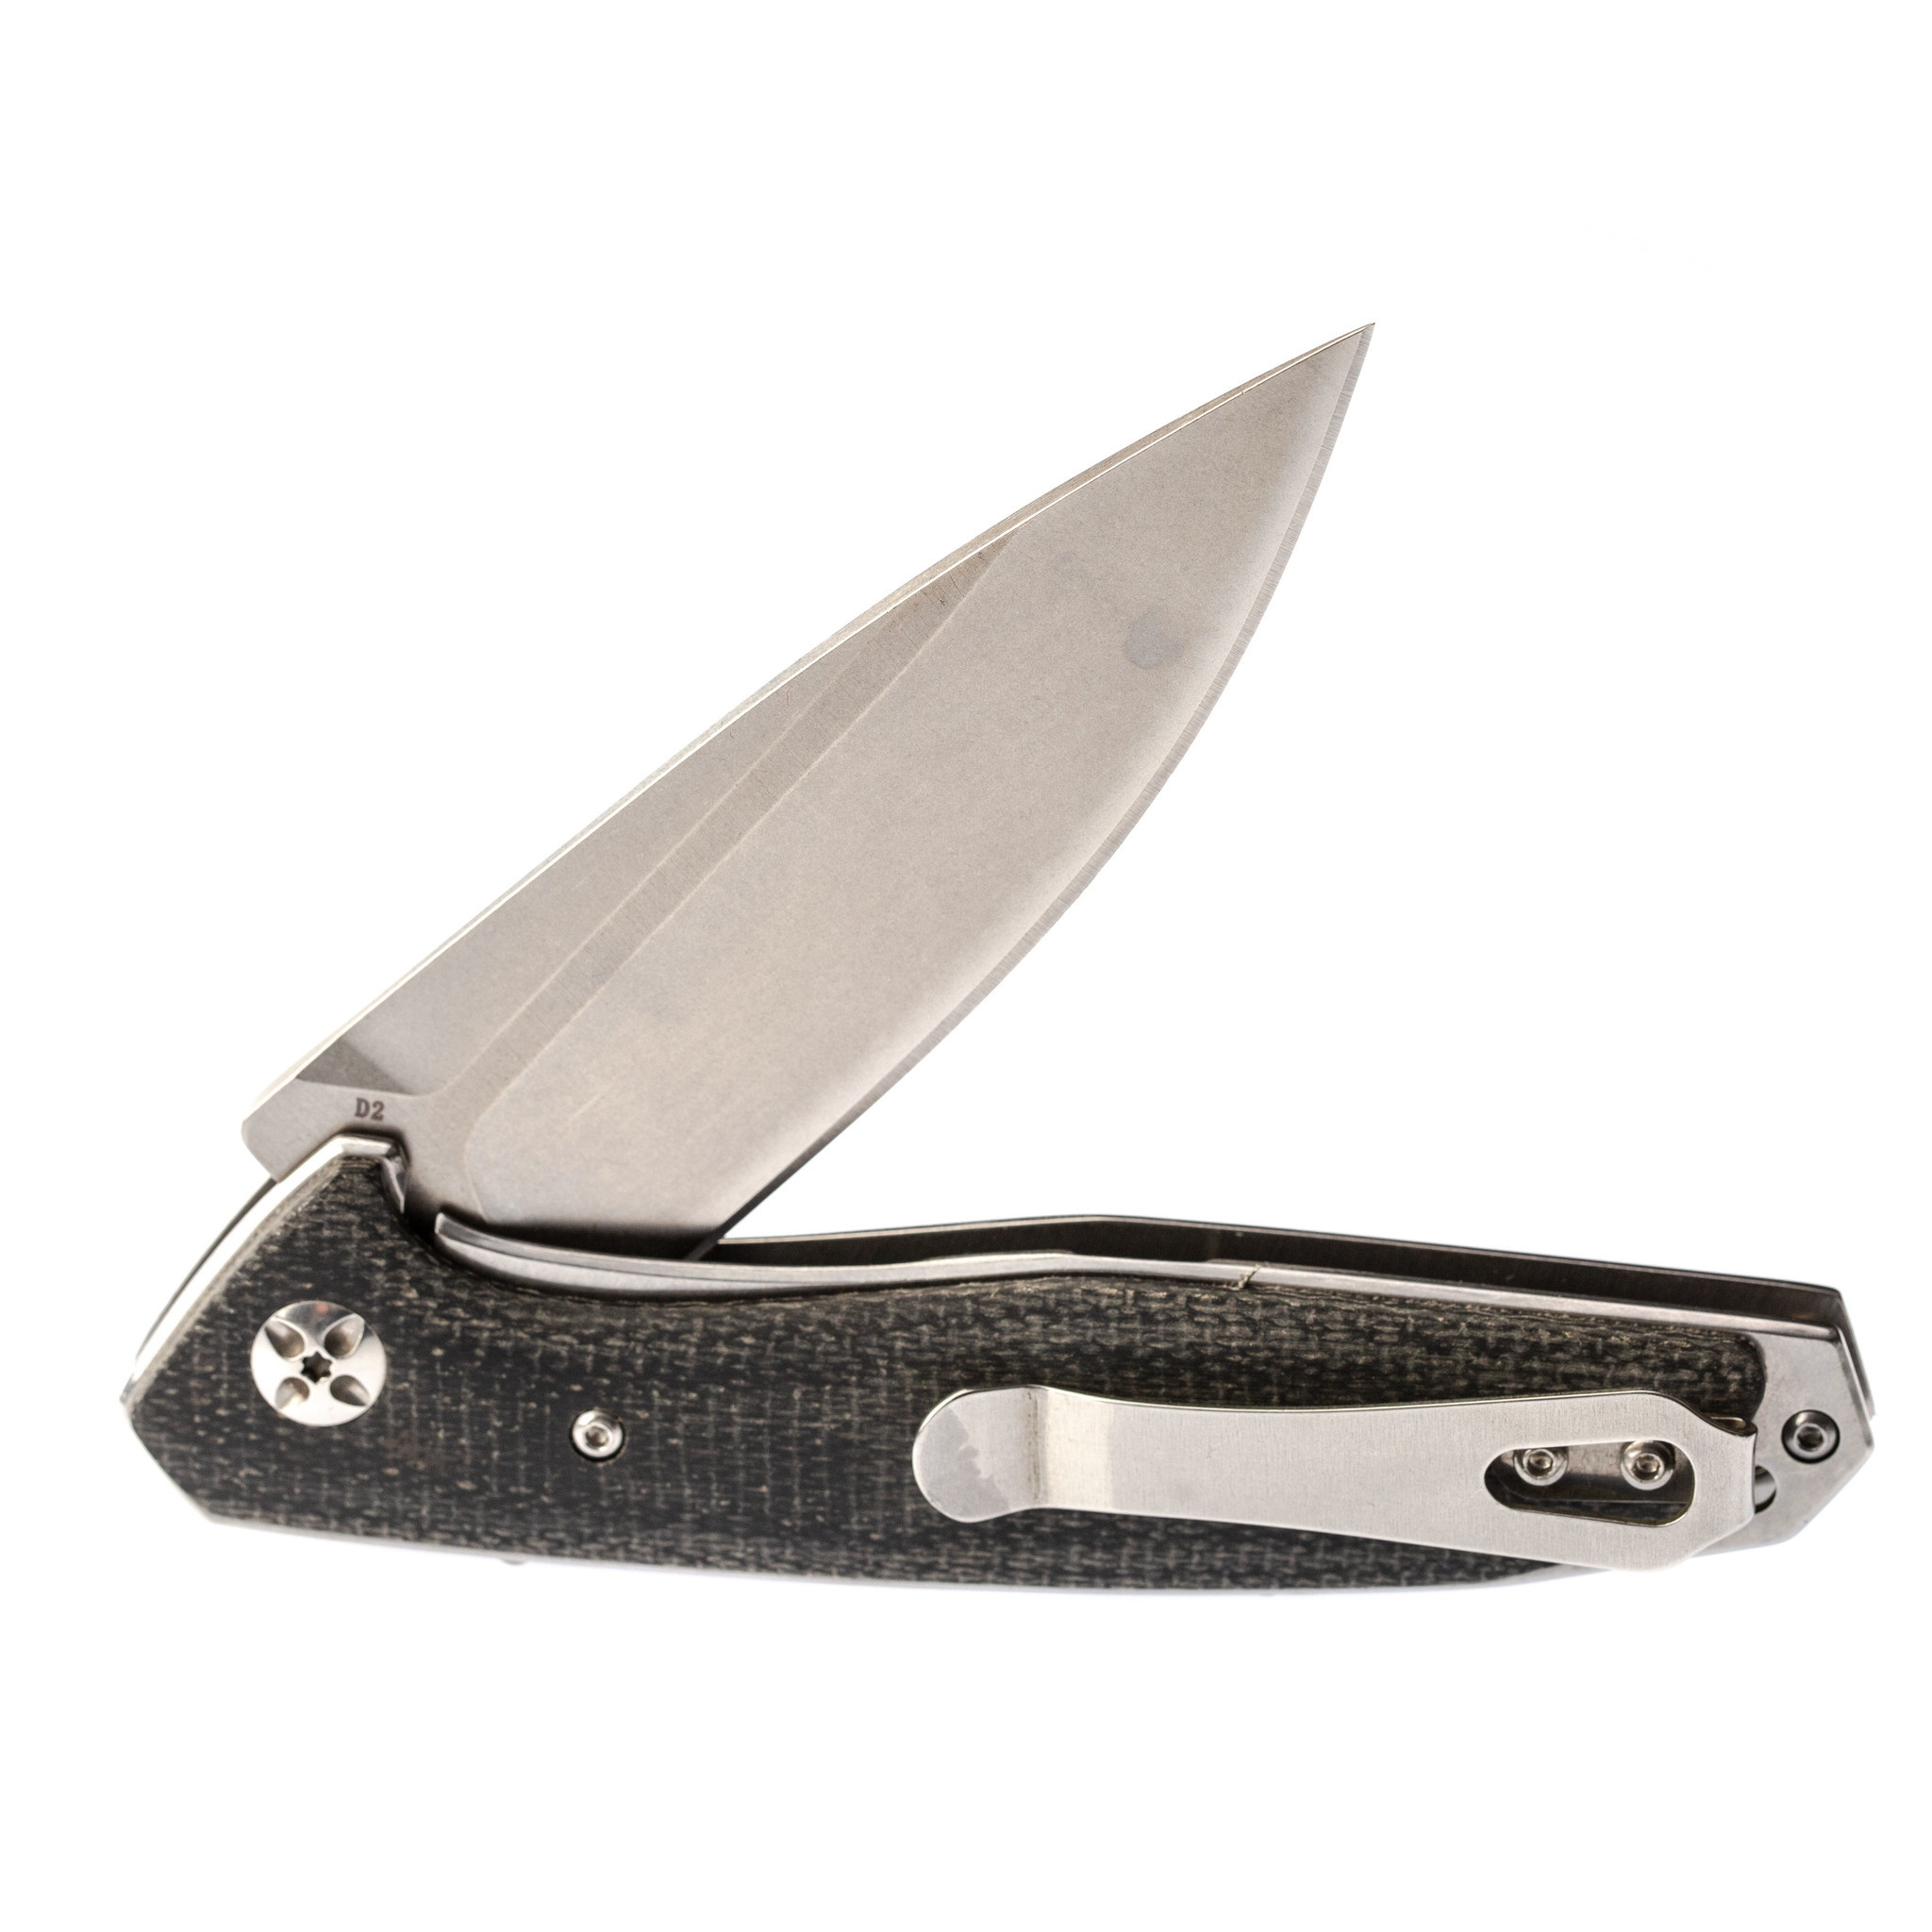 Складной нож Eafengrow EF961 Black, сталь D2 - фото 5